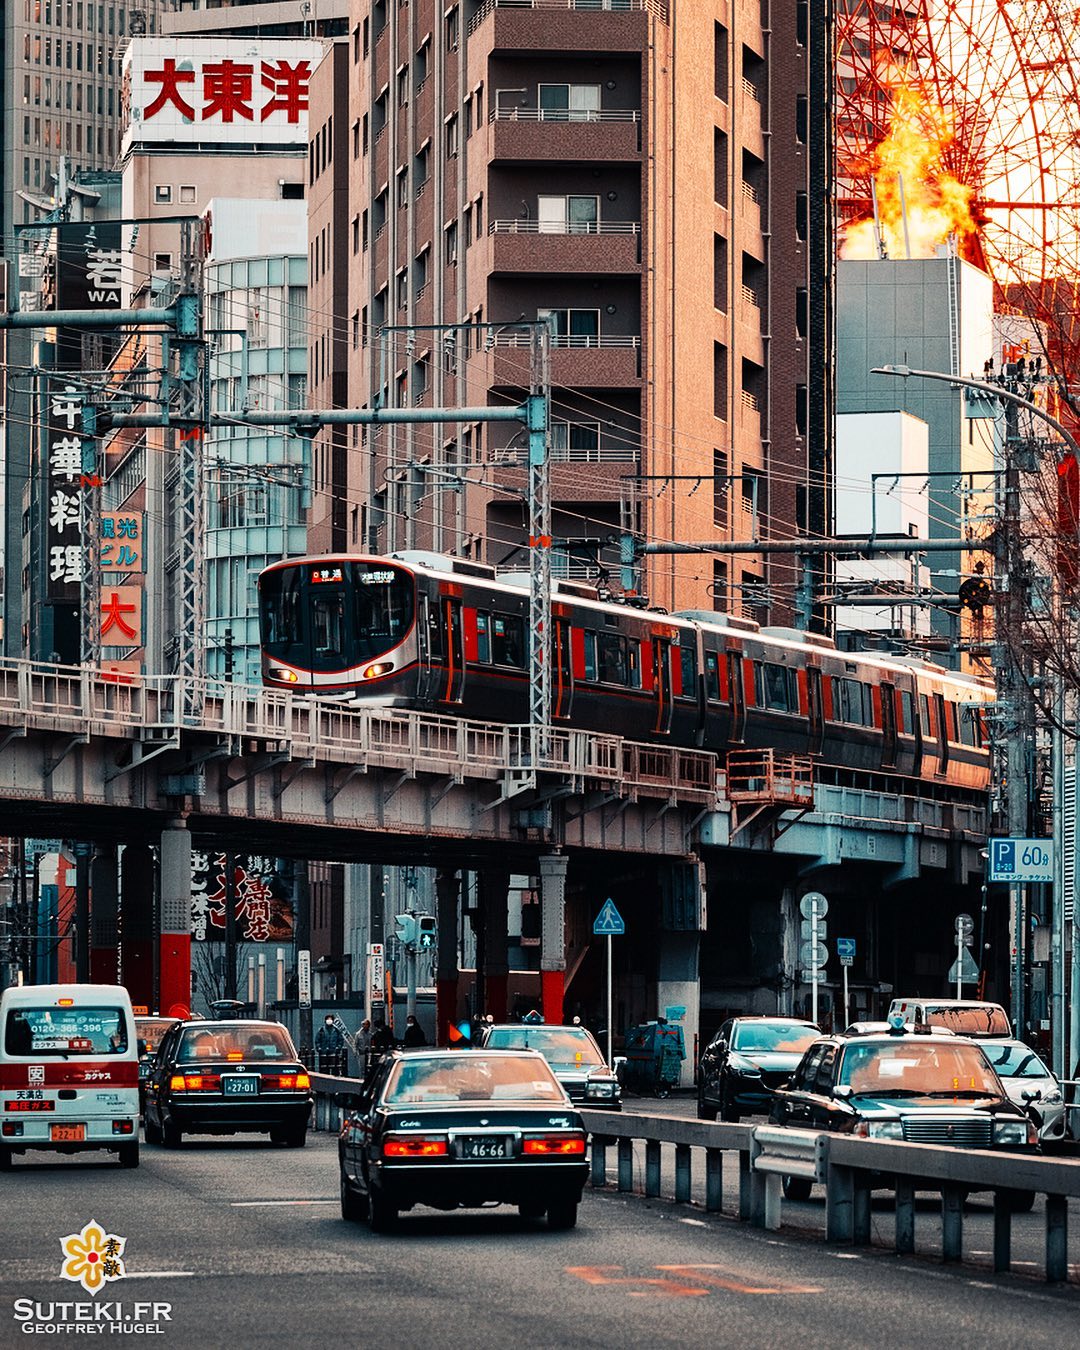 Osaka est vraiment un super terrain de jeu pour la photo urbaine ! On se régale à chaque sortie ! 😎

D’ailleurs dites moi un peu si vous êtes plutôt ville/street comme à Osaka ou plutôt temple/jardin comme à Kyoto ? 🤔😉
.
Follow for more => @sutekifr
.
#hellofrom Osaka 大阪 🇯🇵
#amazingosaka #trainpic #osakatravel #compression #japanvibes #lr_moments #dscvr_earth #discoverjapan #everydayjapan #loveosaka #visualsofearth #fujifilm_xseries #kansai #visitjapan #livingonearth #theglobewonderer #lr_vista #TheWeekOnInstagram #hbouthere #CreateExplore